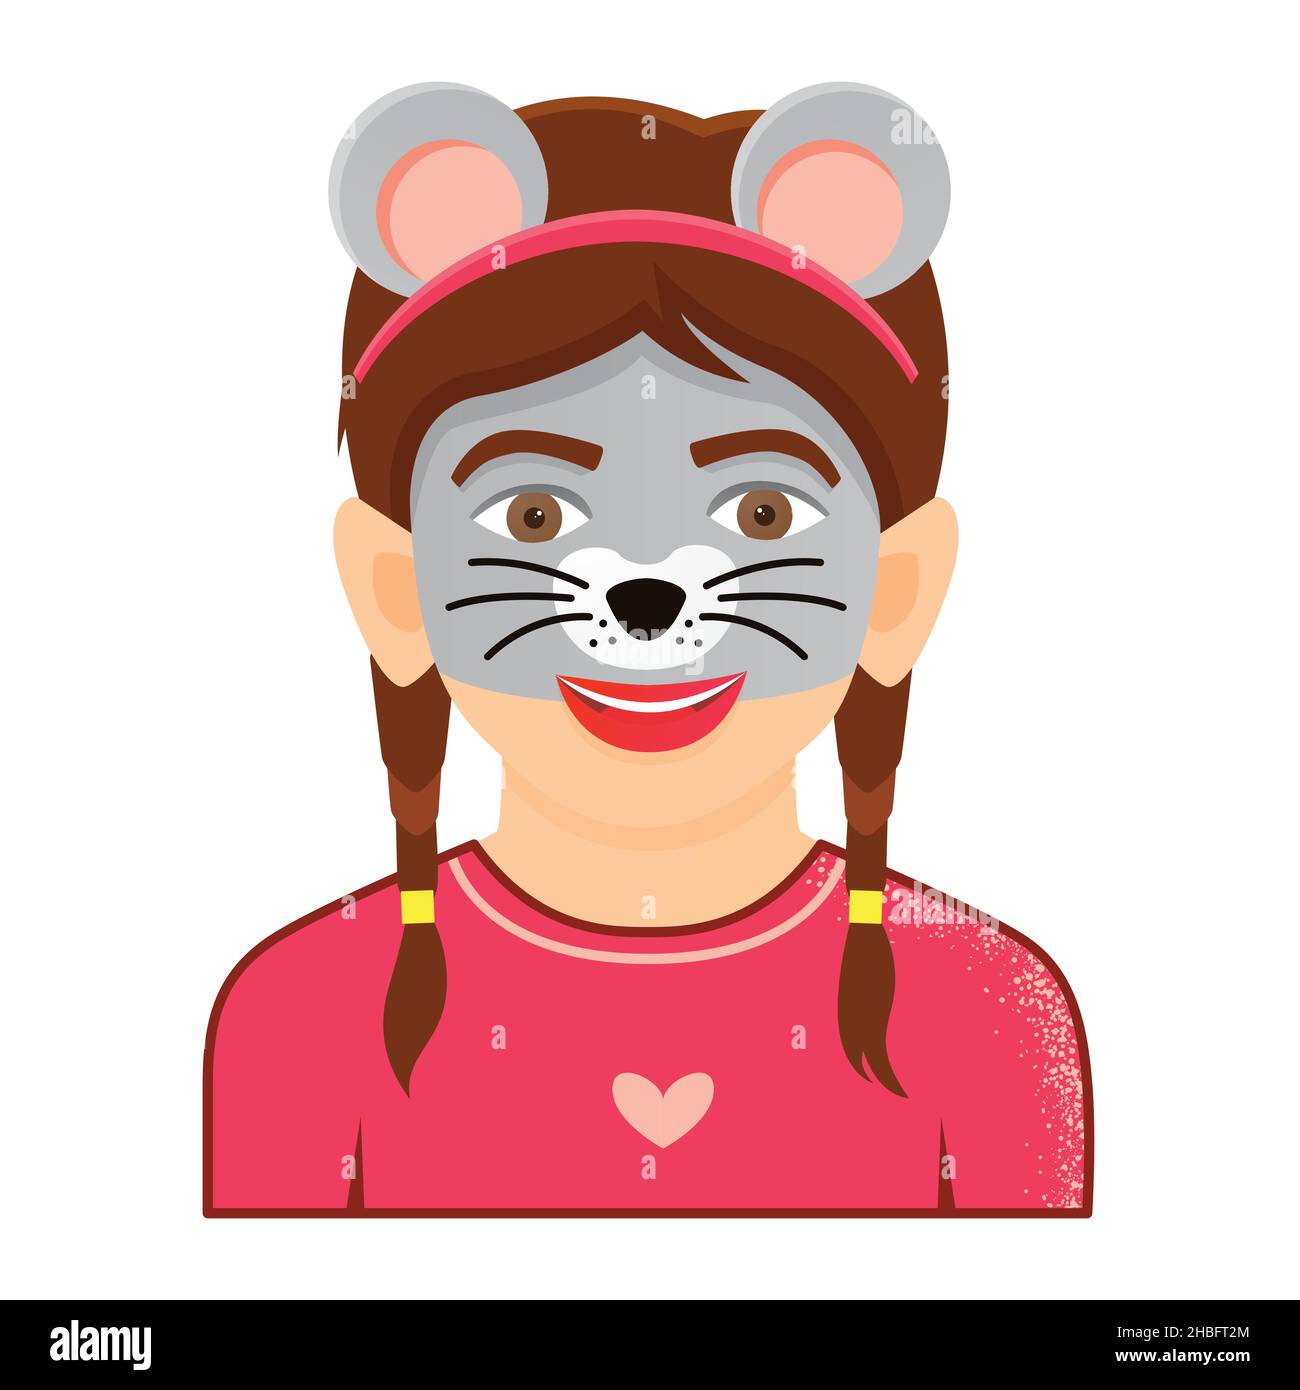 Ritratto di Face Painting di Funny Girl su sfondo bianco. Icona con il carattere del mouse. Illustrazione vettoriale. Illustrazione Vettoriale